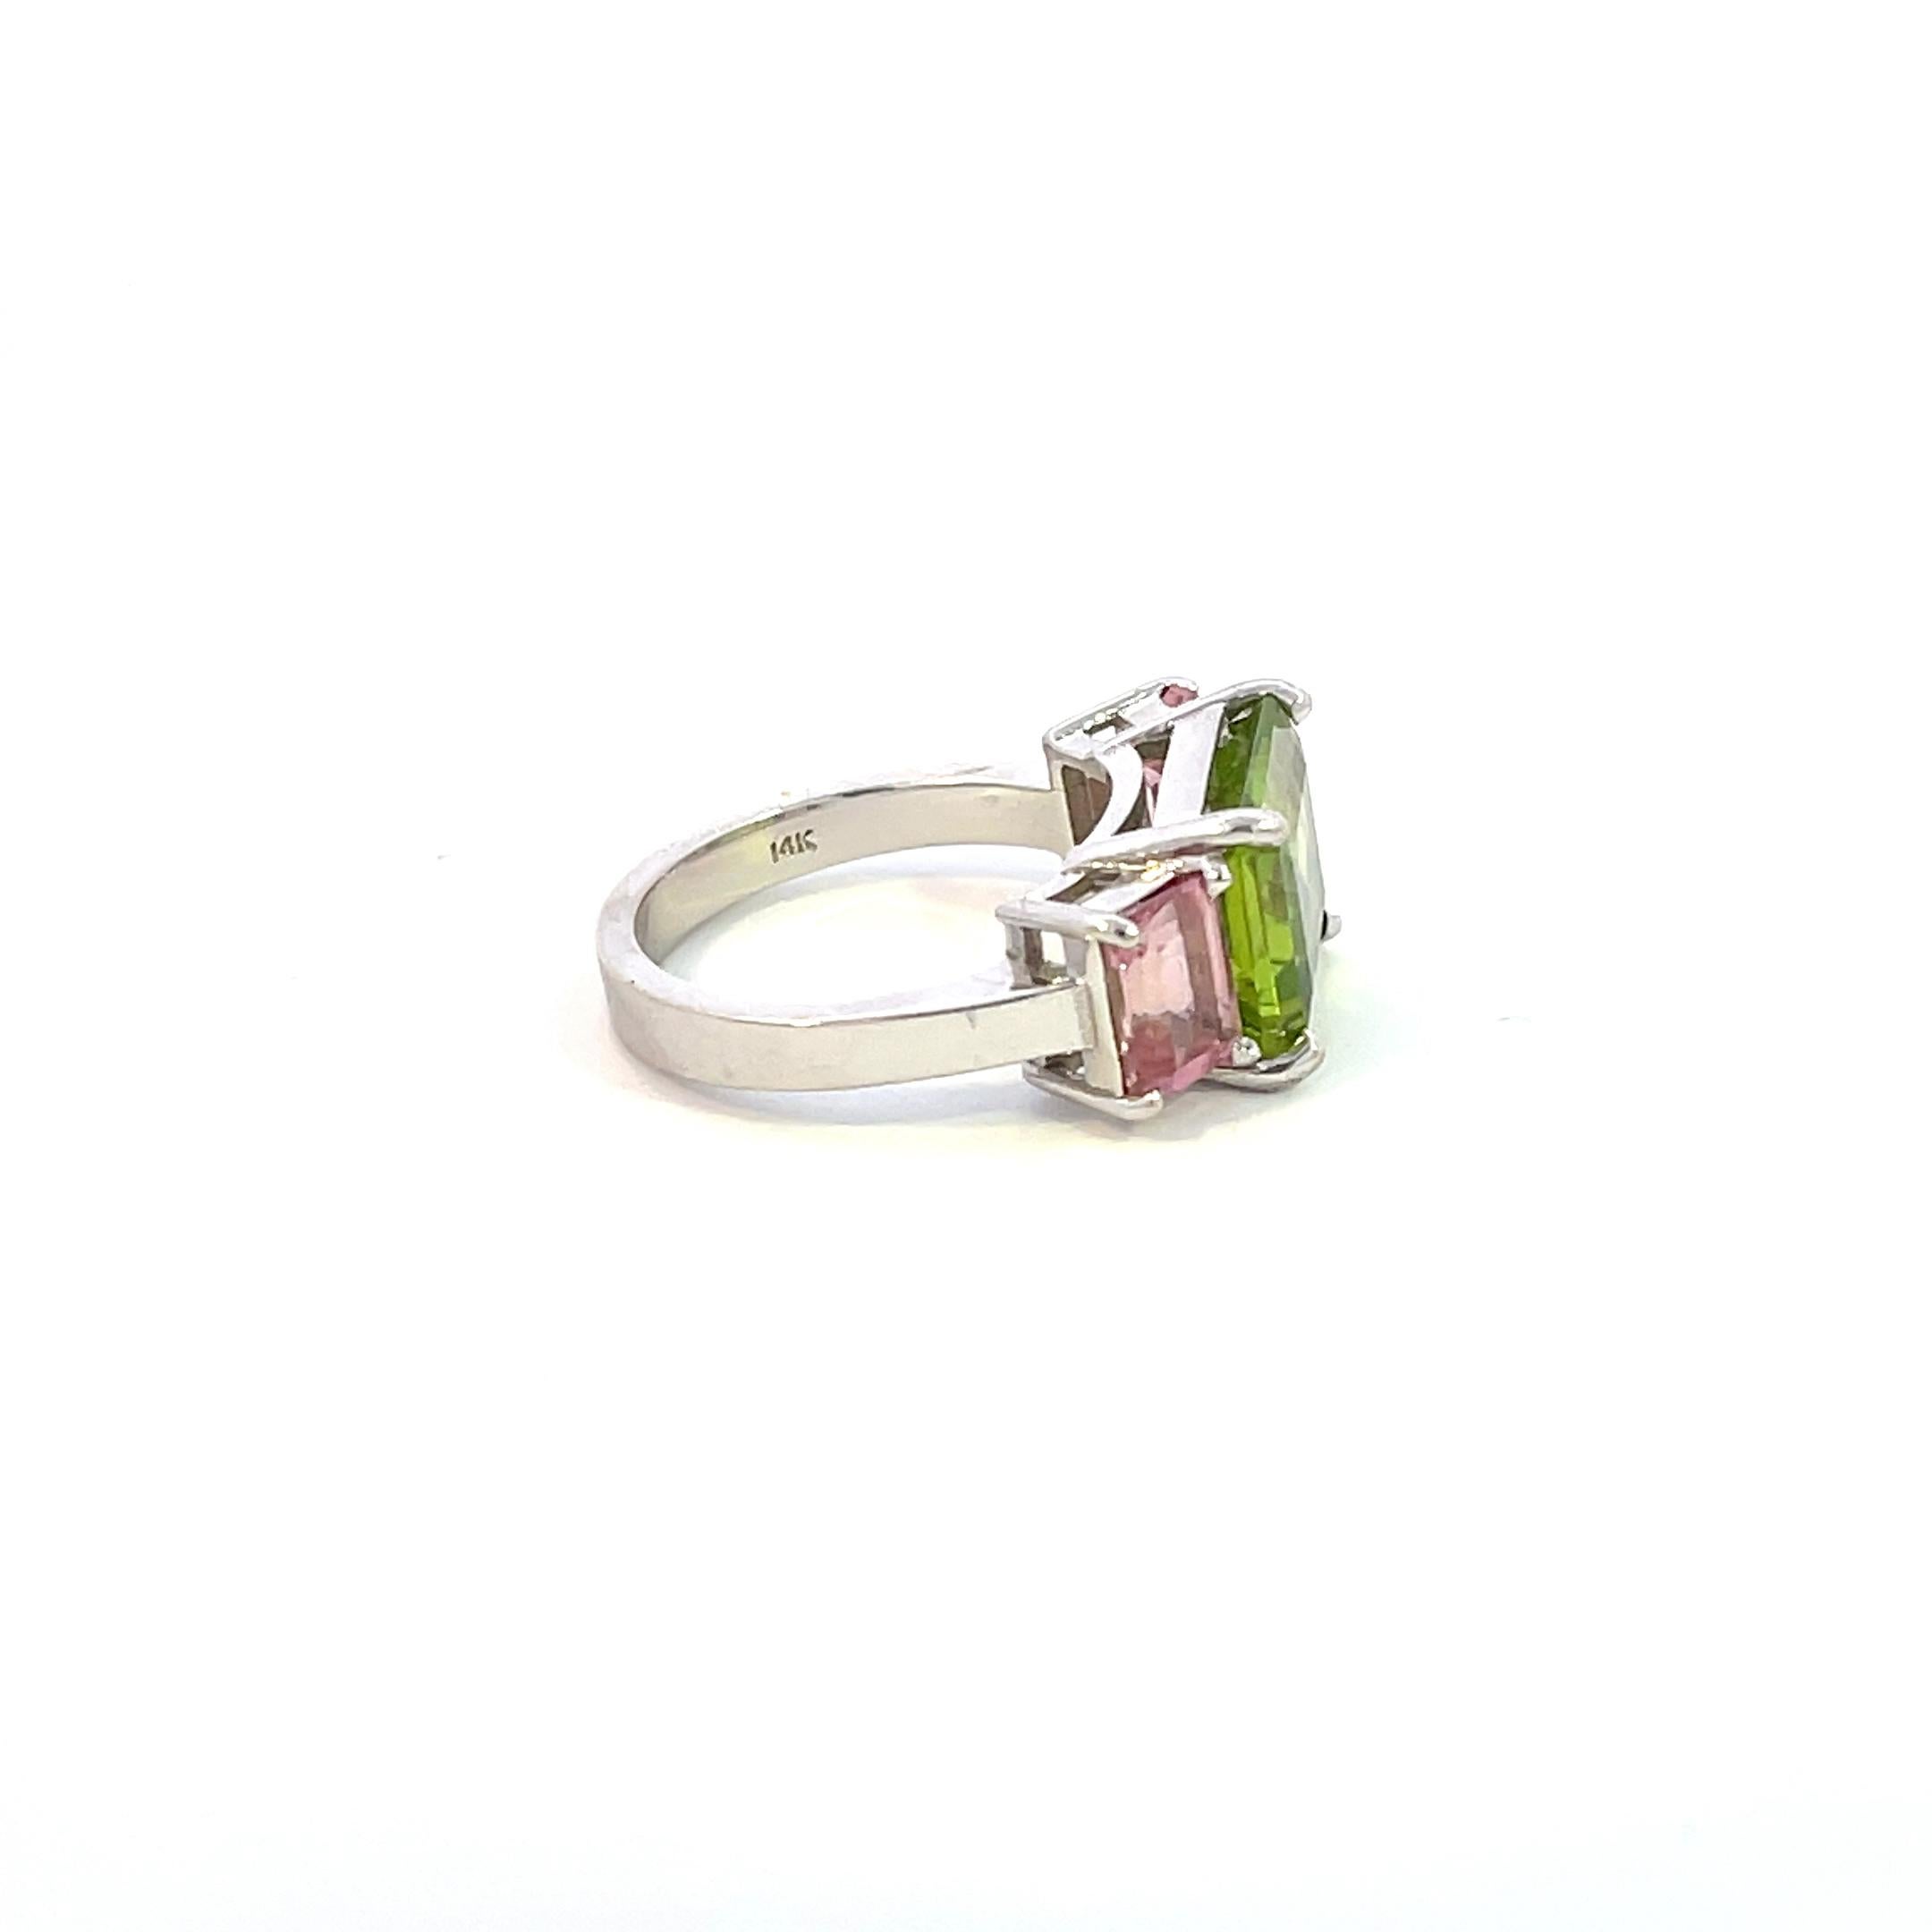 Dies ist ein einzigartiger Ring, den Sie sich nicht entgehen lassen sollten! 

Der Mittelstein ist ein grüner Peridot im Smaragdschliff mit einem Gewicht von ca. 5,25cts (11,20 x 9,20mm) und ist mit zwei (2) rosa Saphiren im Smaragdschliff mit einem